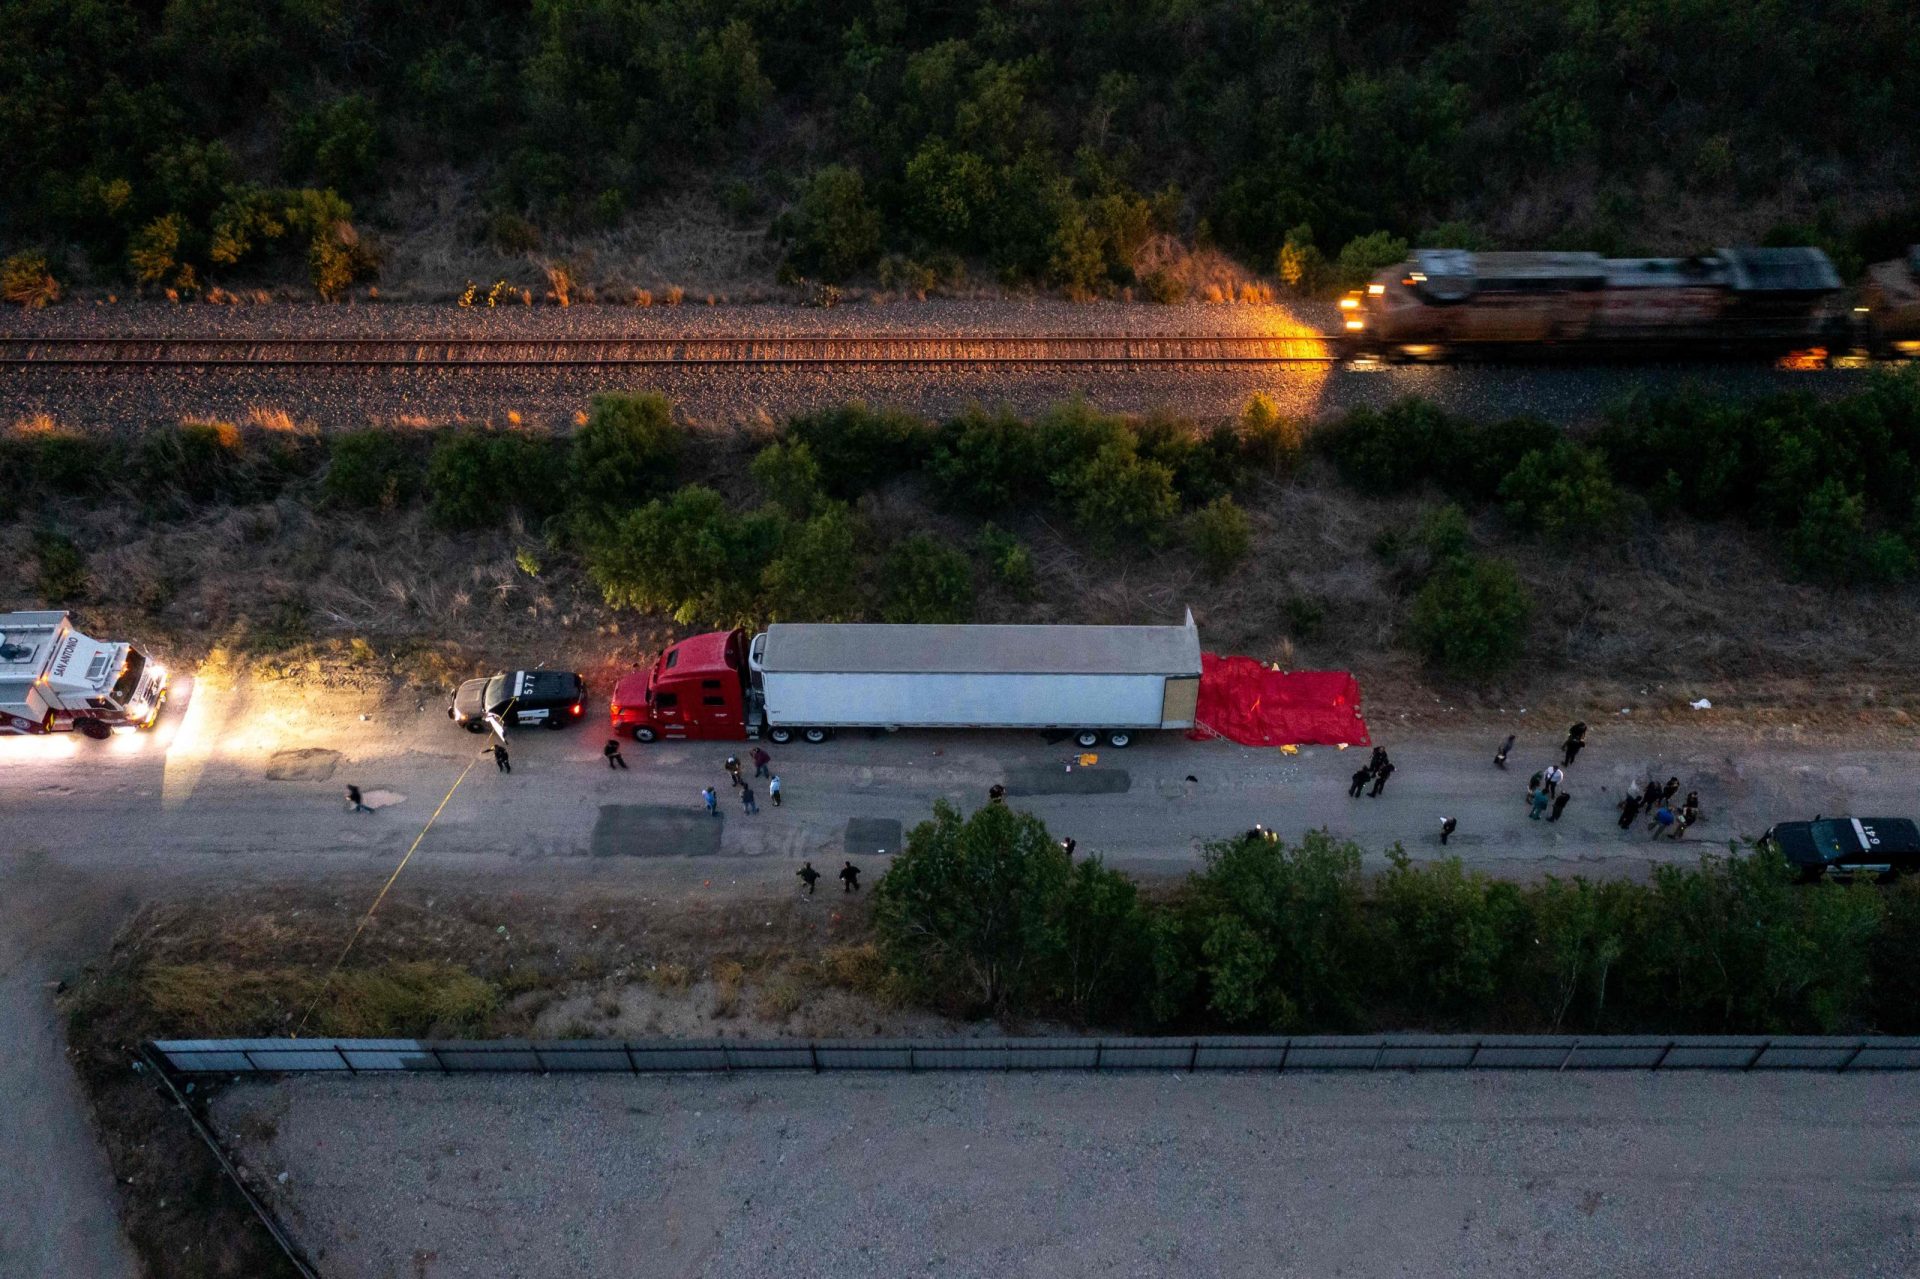 Encontradas 46 pessoas mortas no interior de um camião no Texas